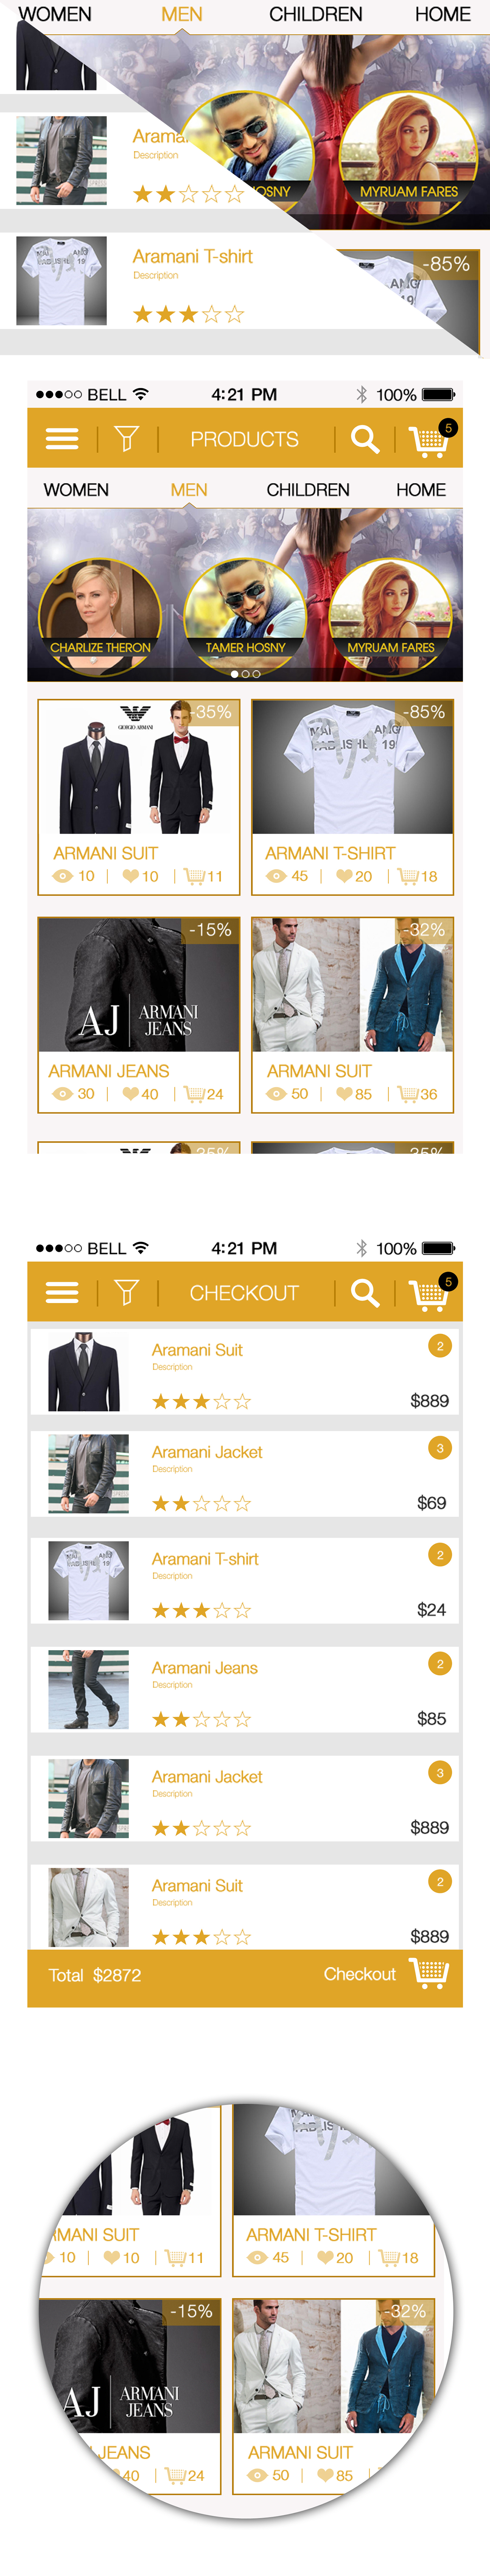 Mobile app e-commerce